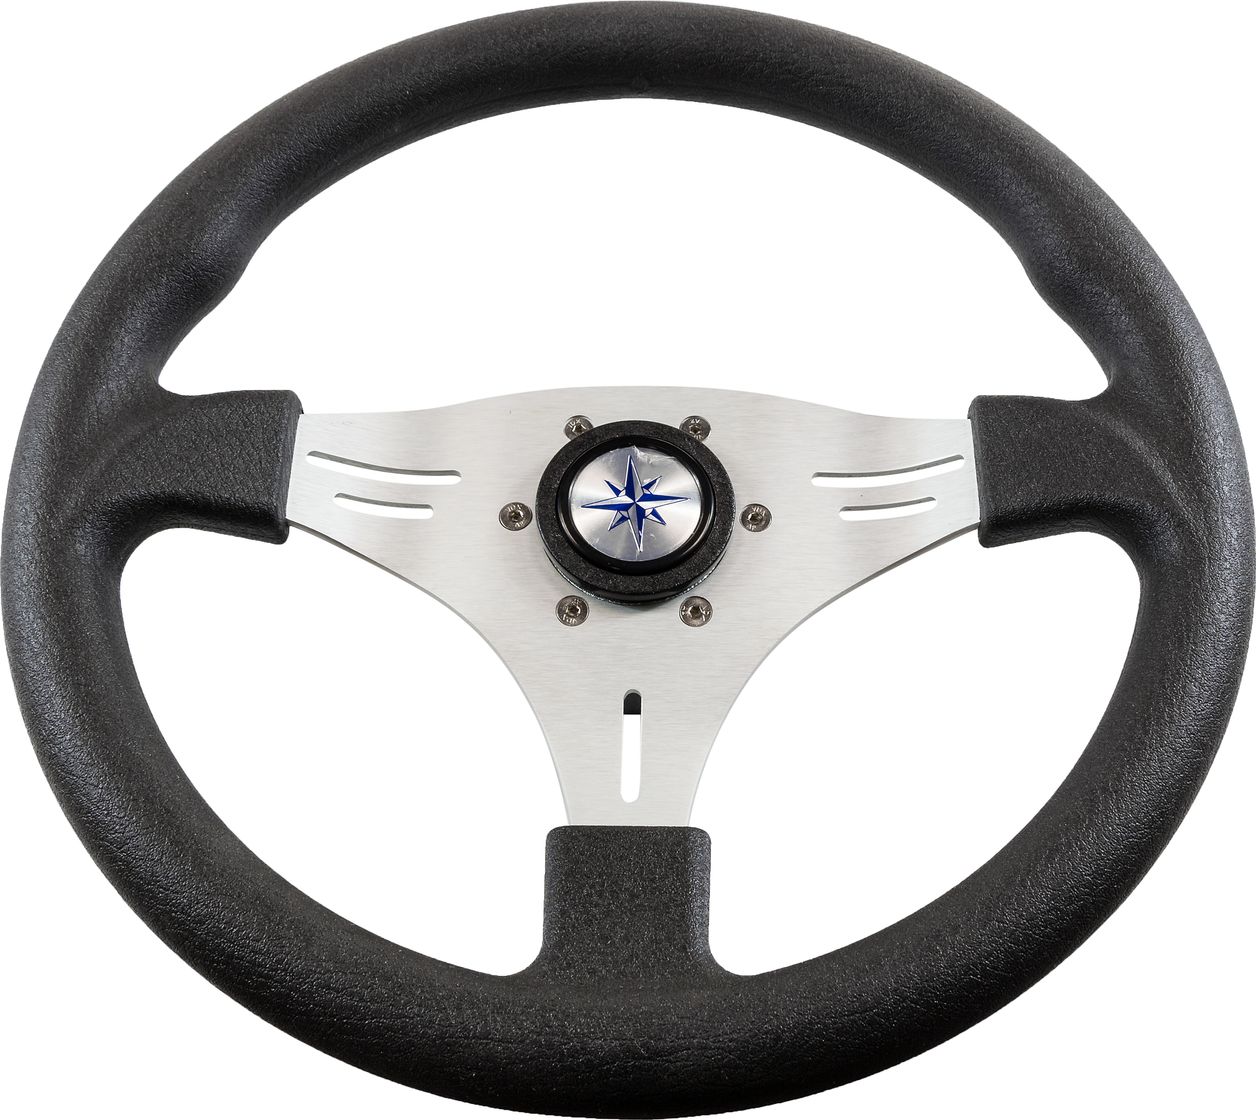 Рулевое колесо MANTA обод черный, спицы серебряные д. 355 мм VN70551-01 колесо для трюкового самоката sub алюминий подшипник abec9 110мм анодированное 00 180109